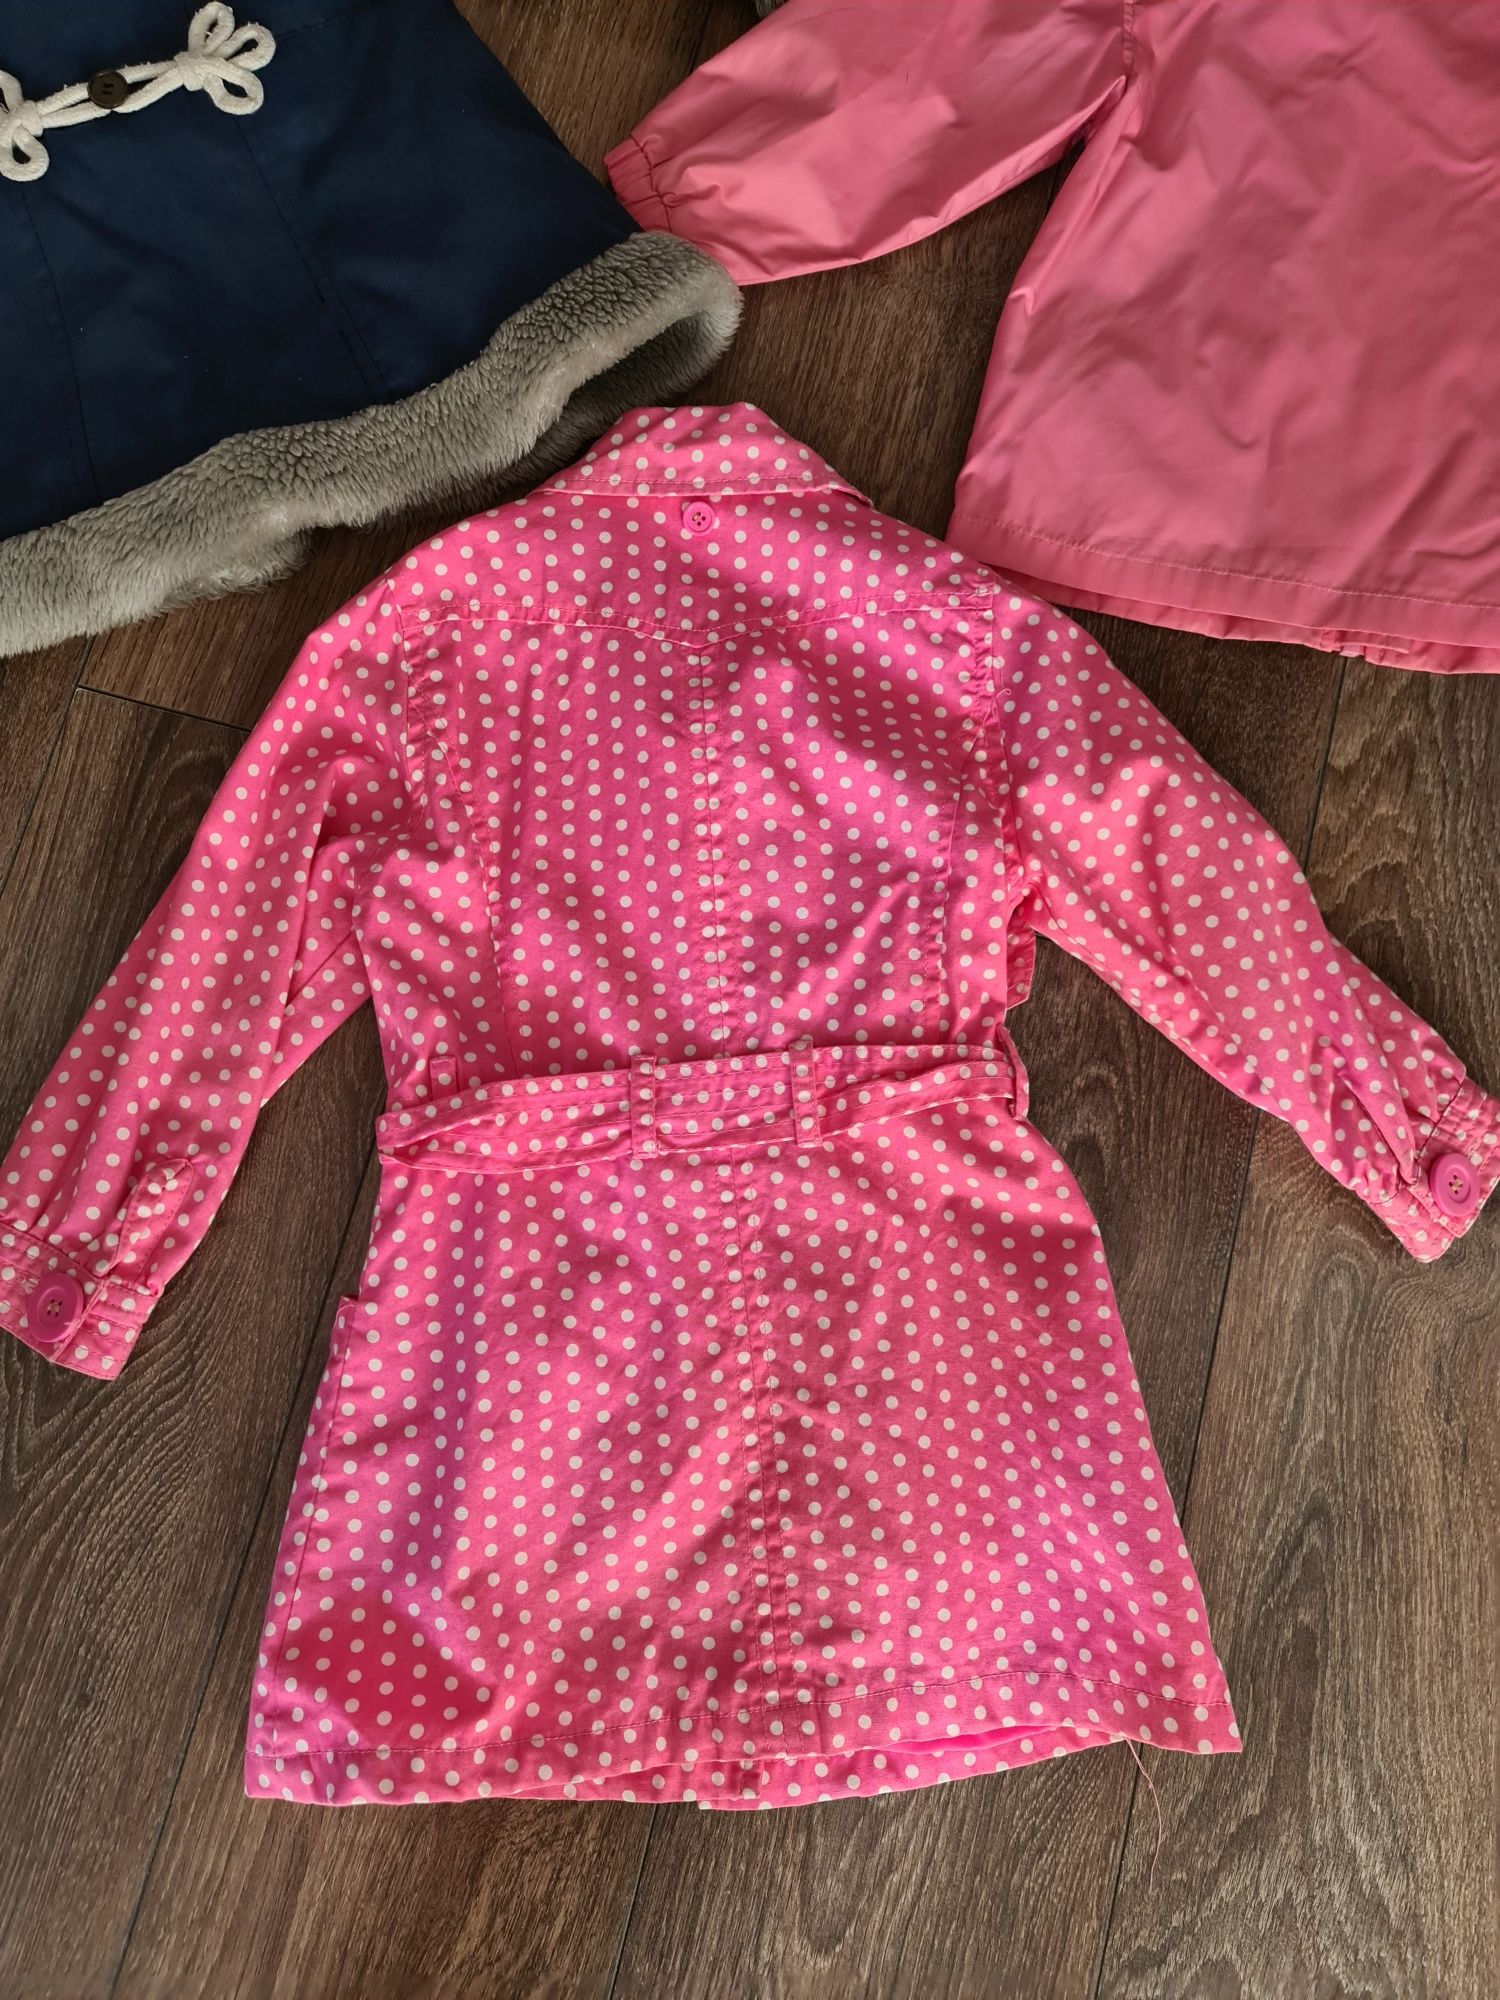 Płaszczyk,kurtka,różowa dziewczynka 92-104 rozmiar